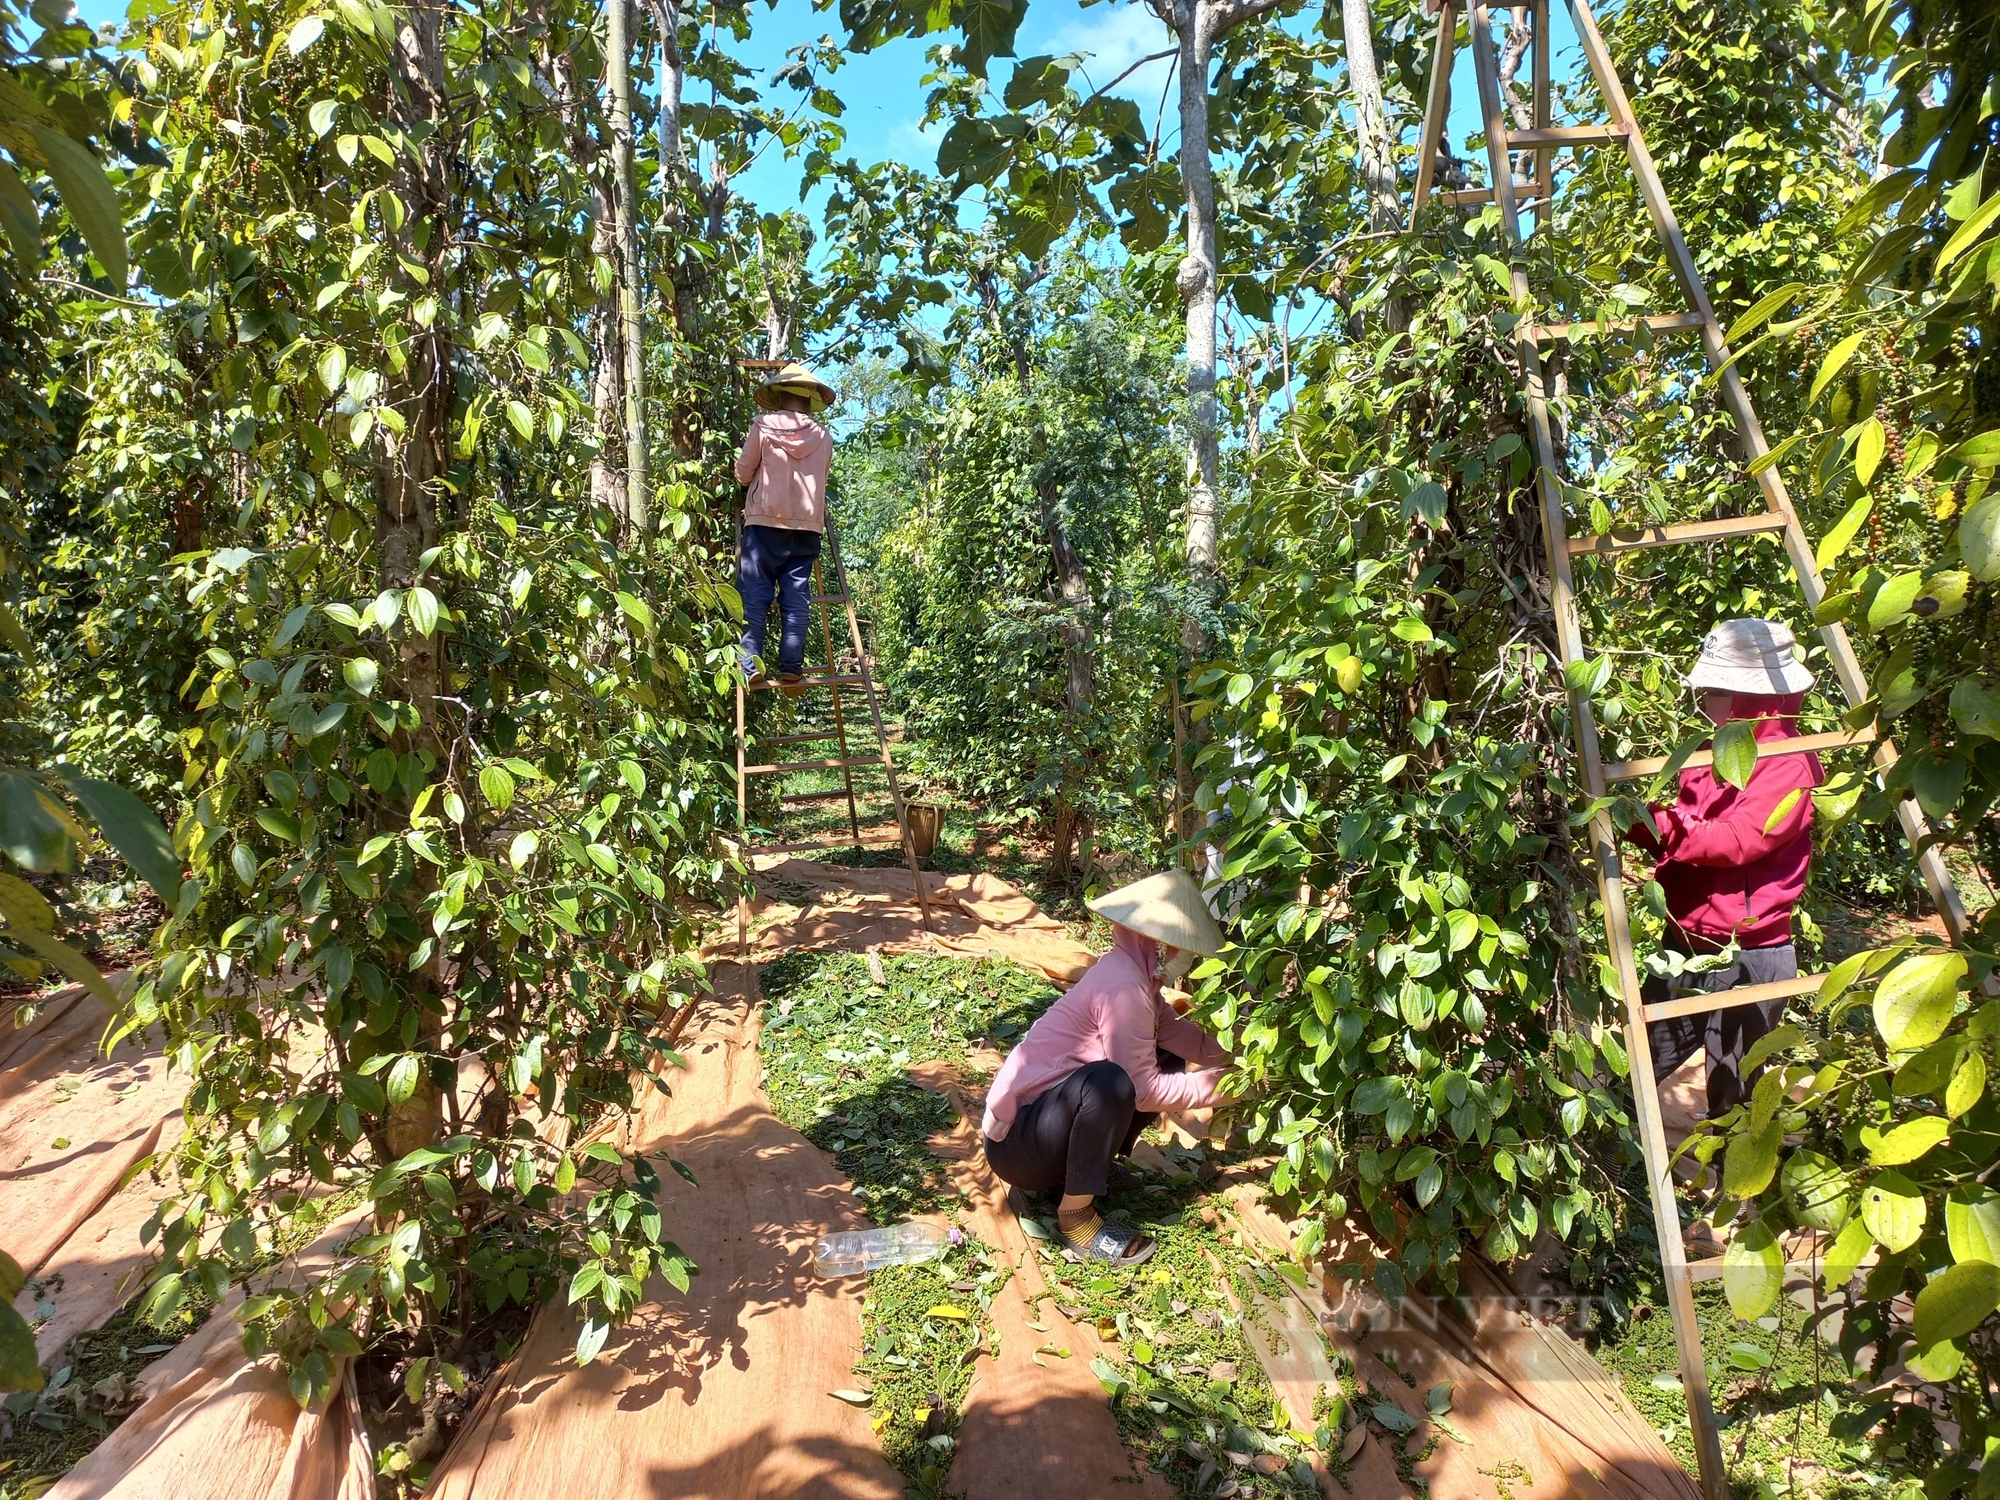 Nhà vườn Gia Lai chạy đôn chạy đáo tìm nhân công thu hoạch tiêu- Ảnh 1.